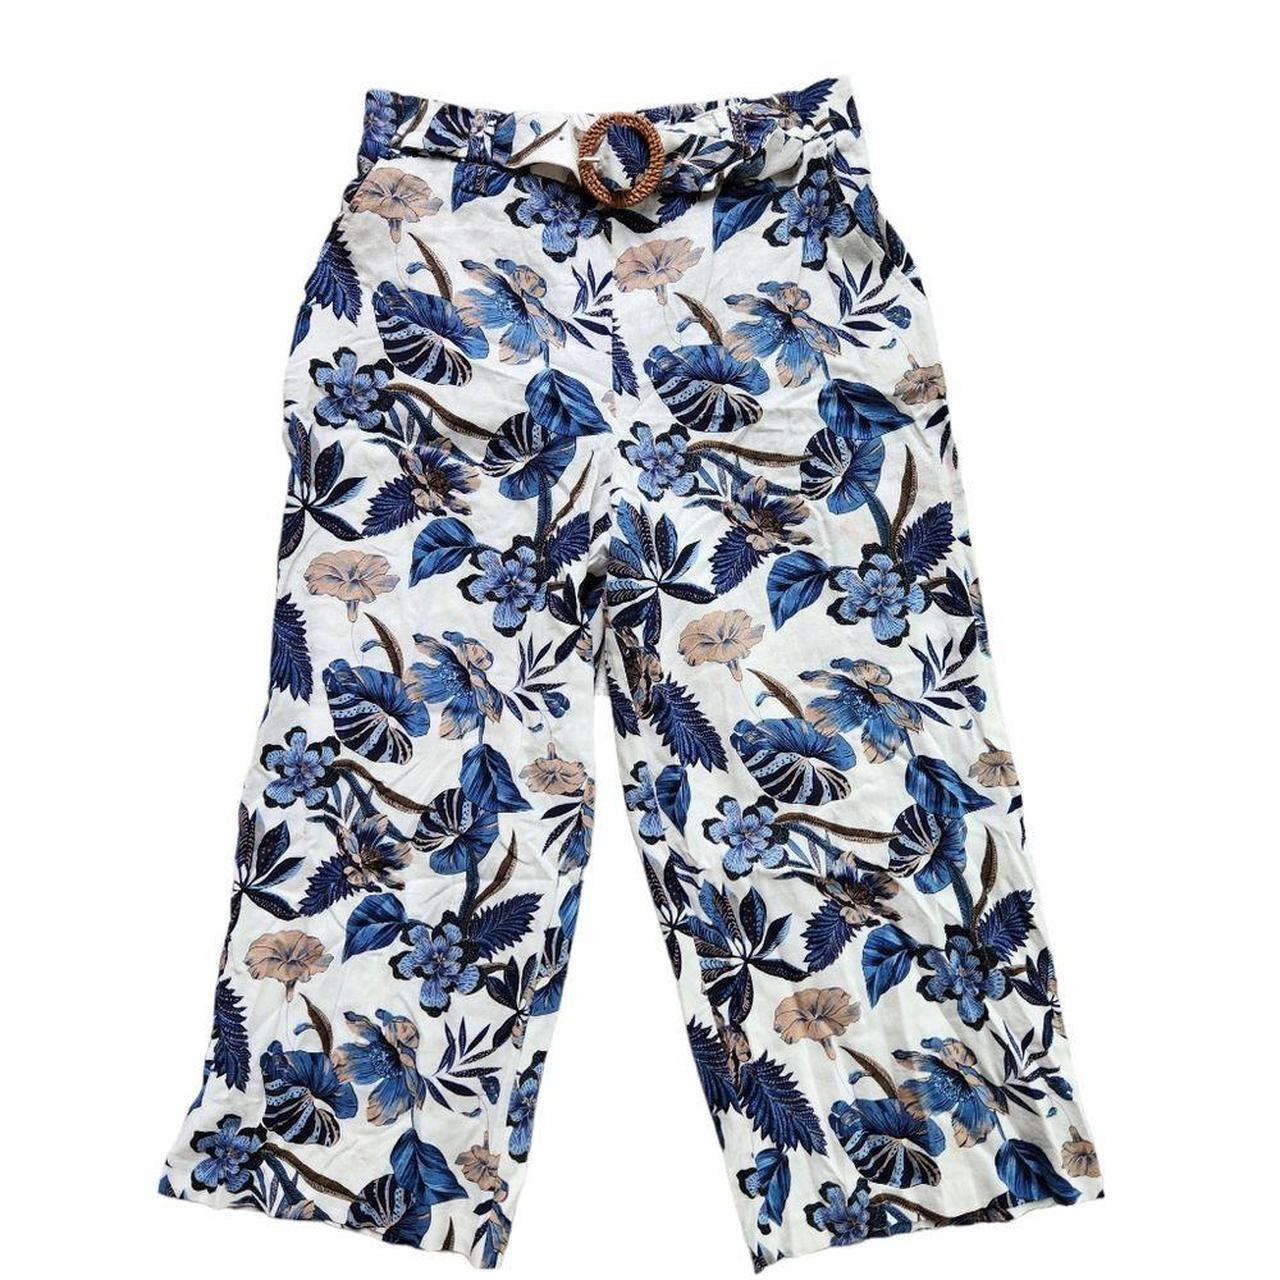 NEW Sigrid Olsen Floral Belted Capri Pants Size 10... - Depop